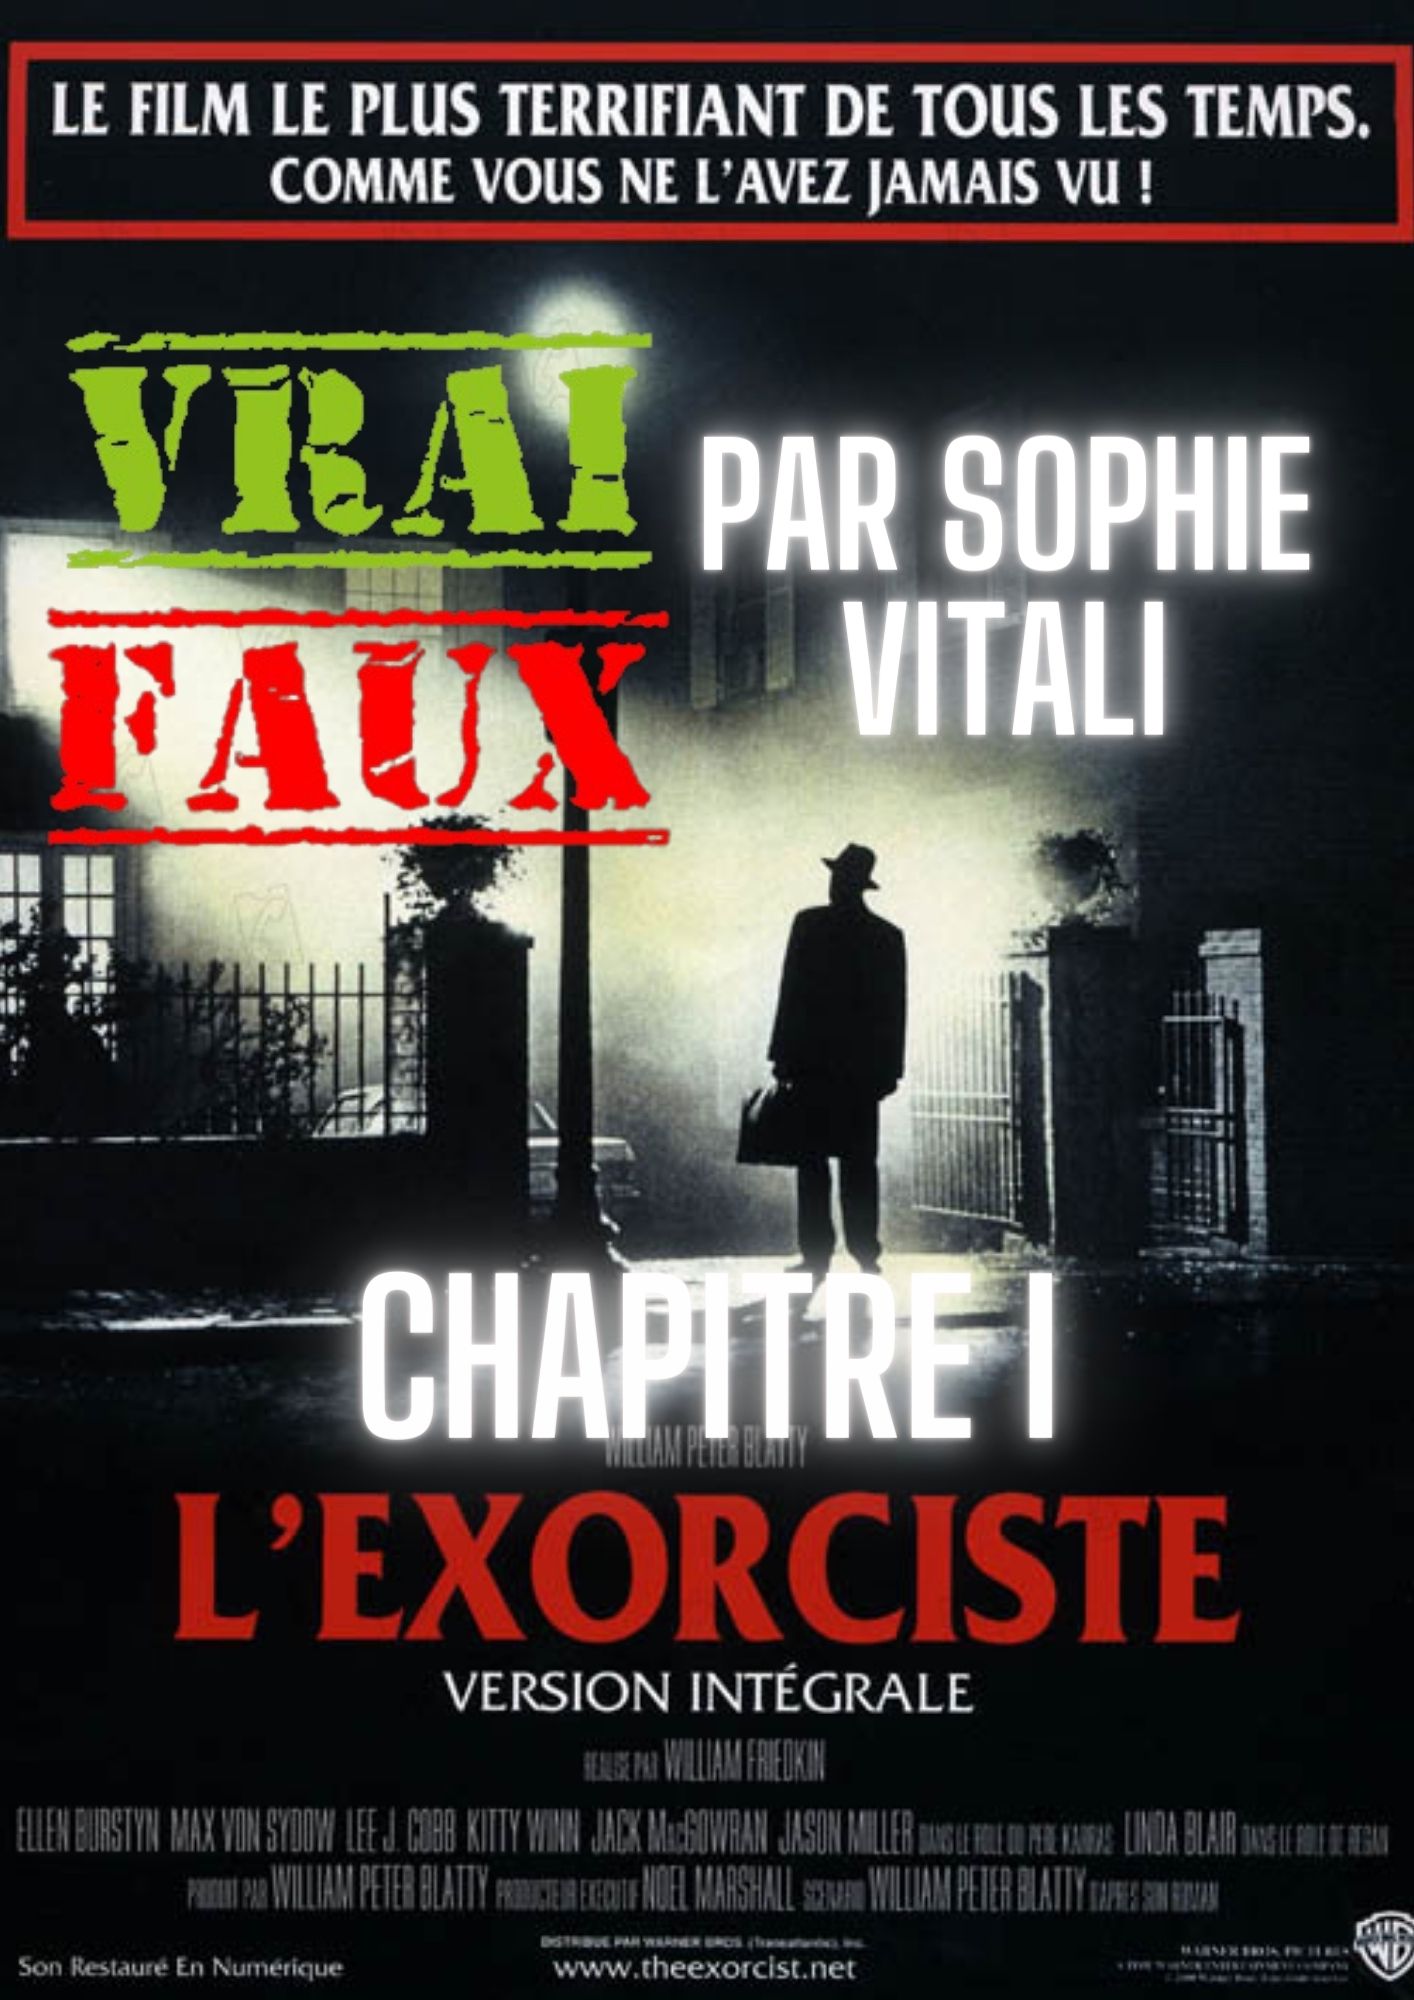 Le film d'horreur L'exorciste : sa véritable histoire par Sophie Vitali parapsychologue